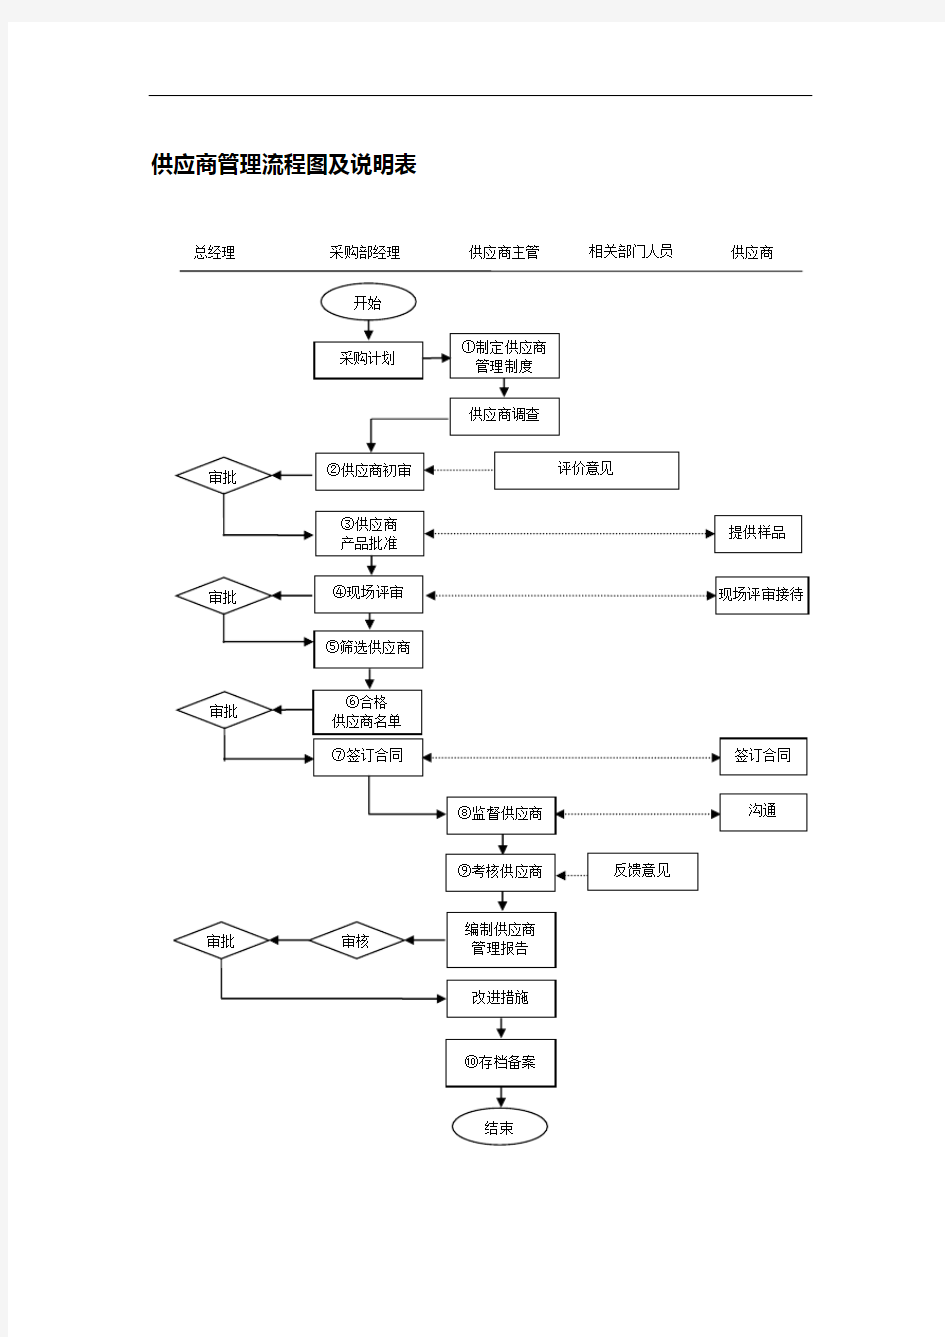 供应商管理流程图及说明表